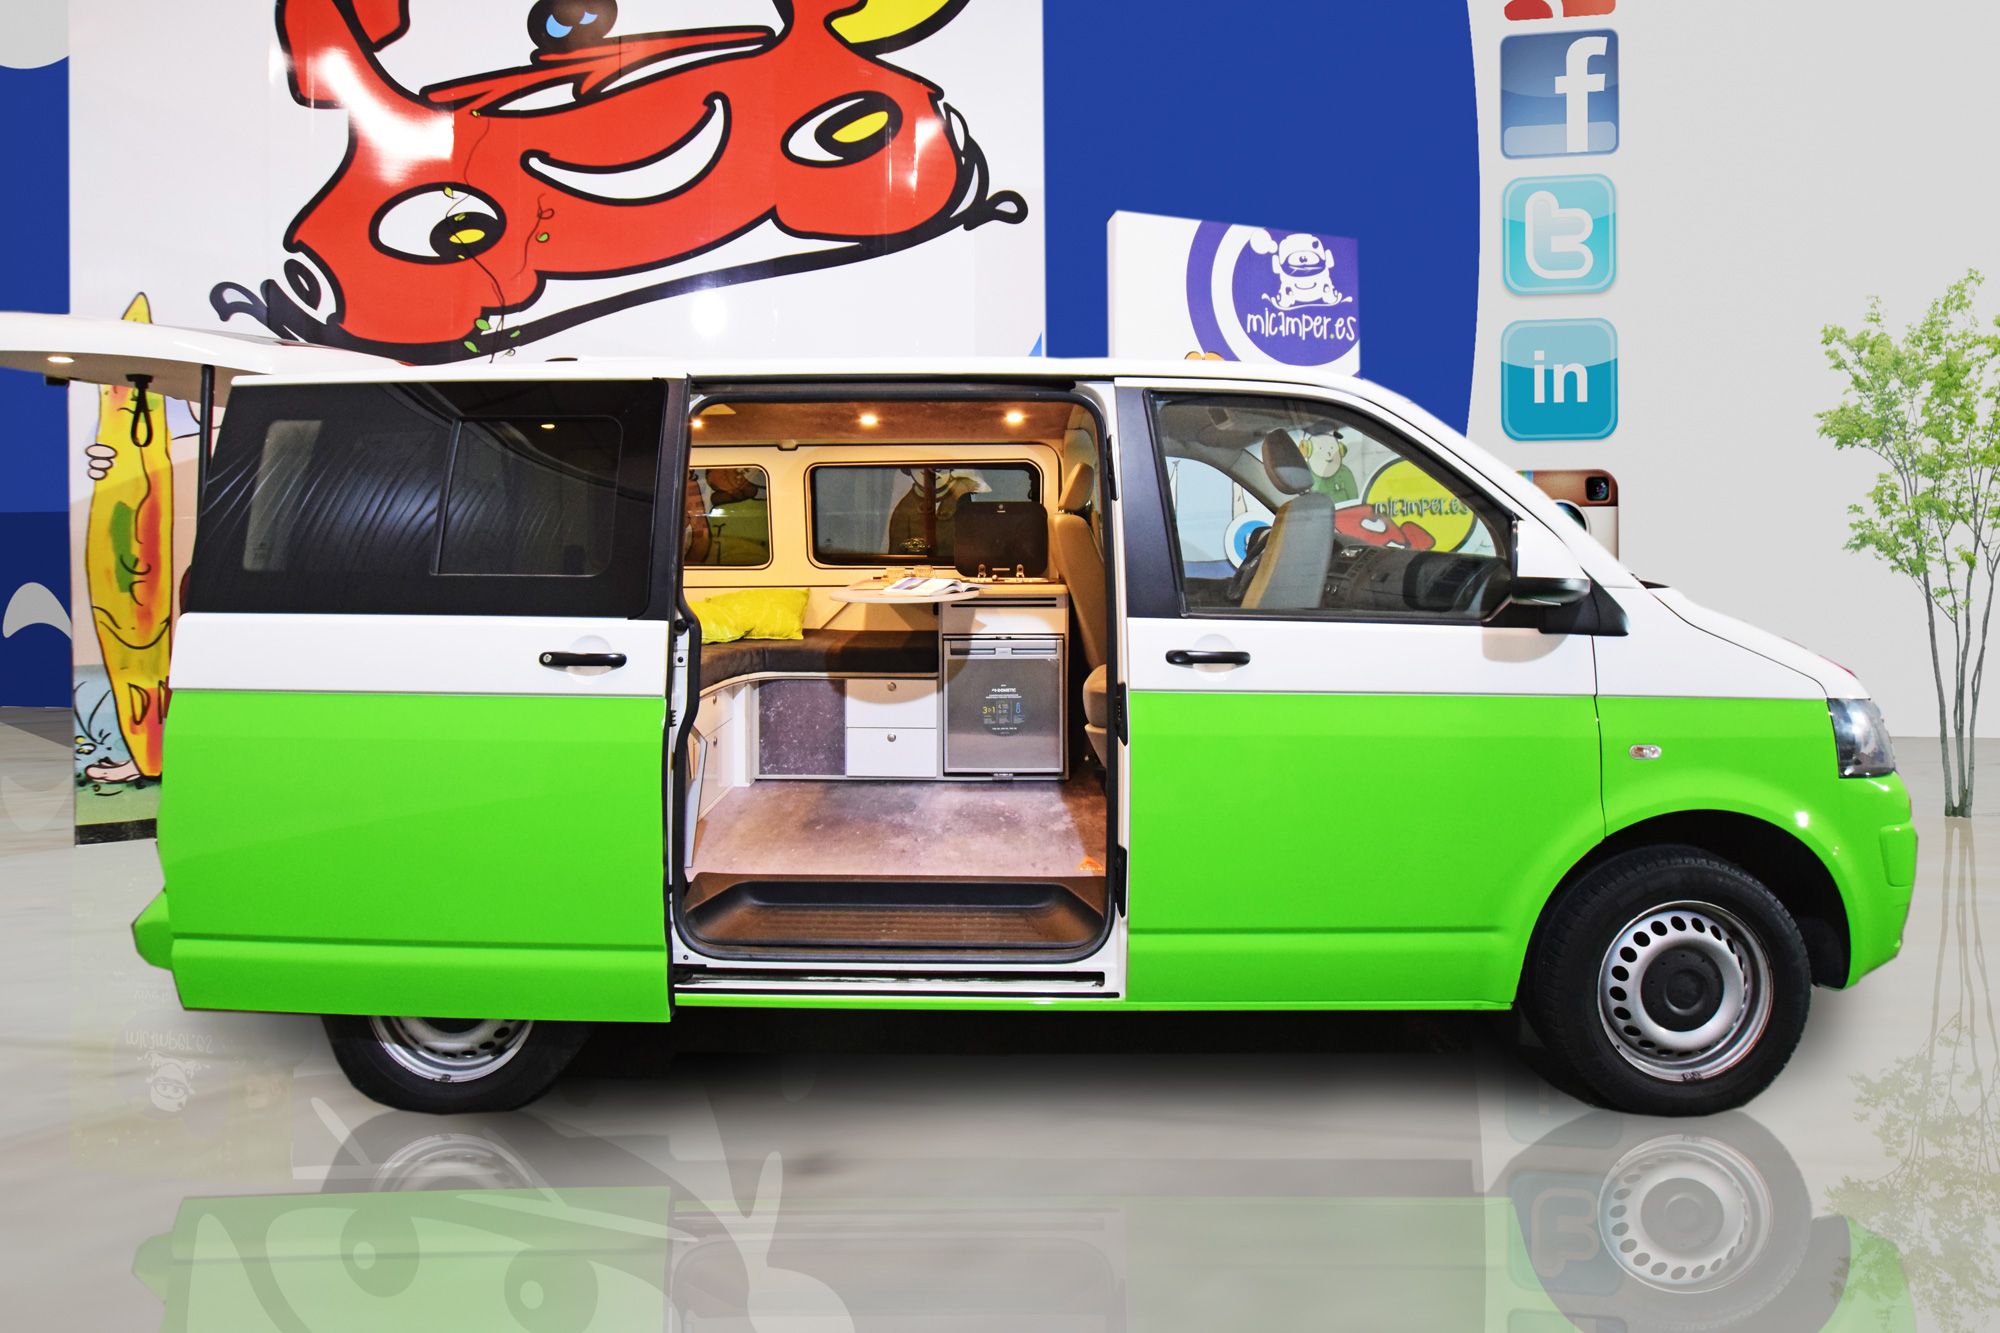 Foto 2 : Volkswagen campervan bicolor